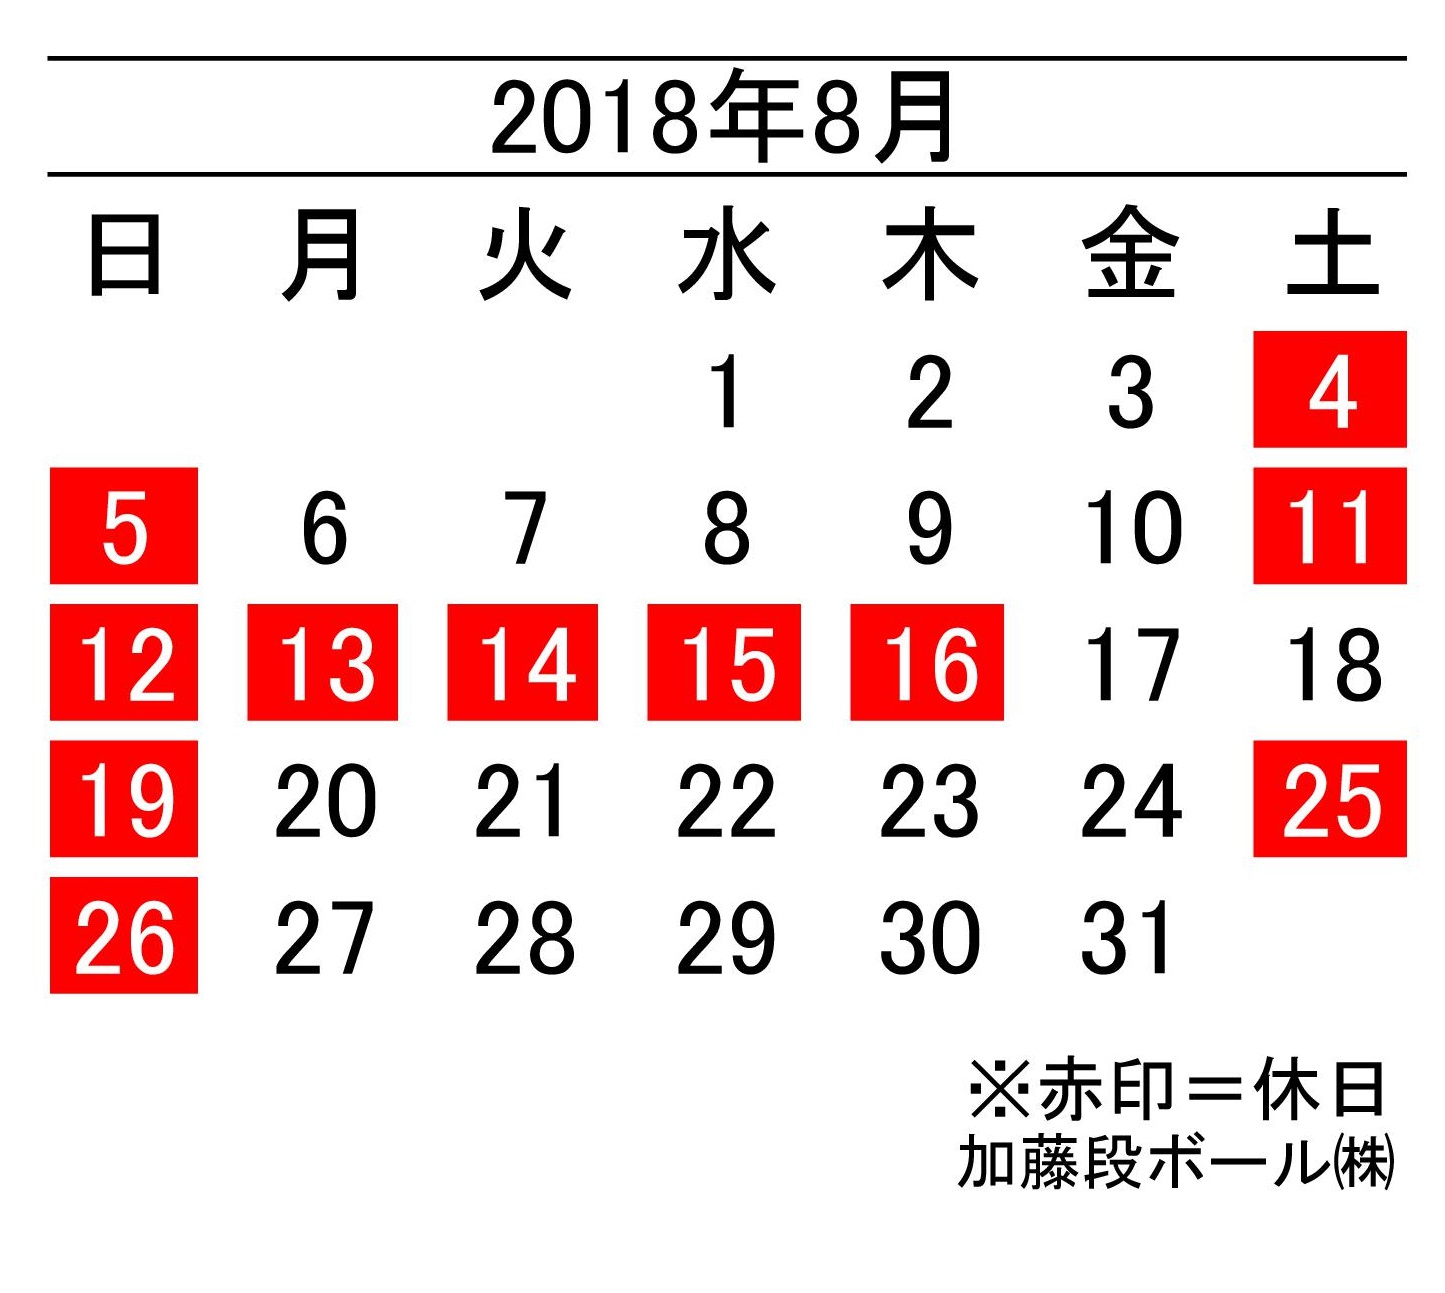 18年8月度営業日カレンダー 加藤段ボール株式会社 千葉 福島 神奈川を中心に段ボール製品 梱包資材の製造と販売